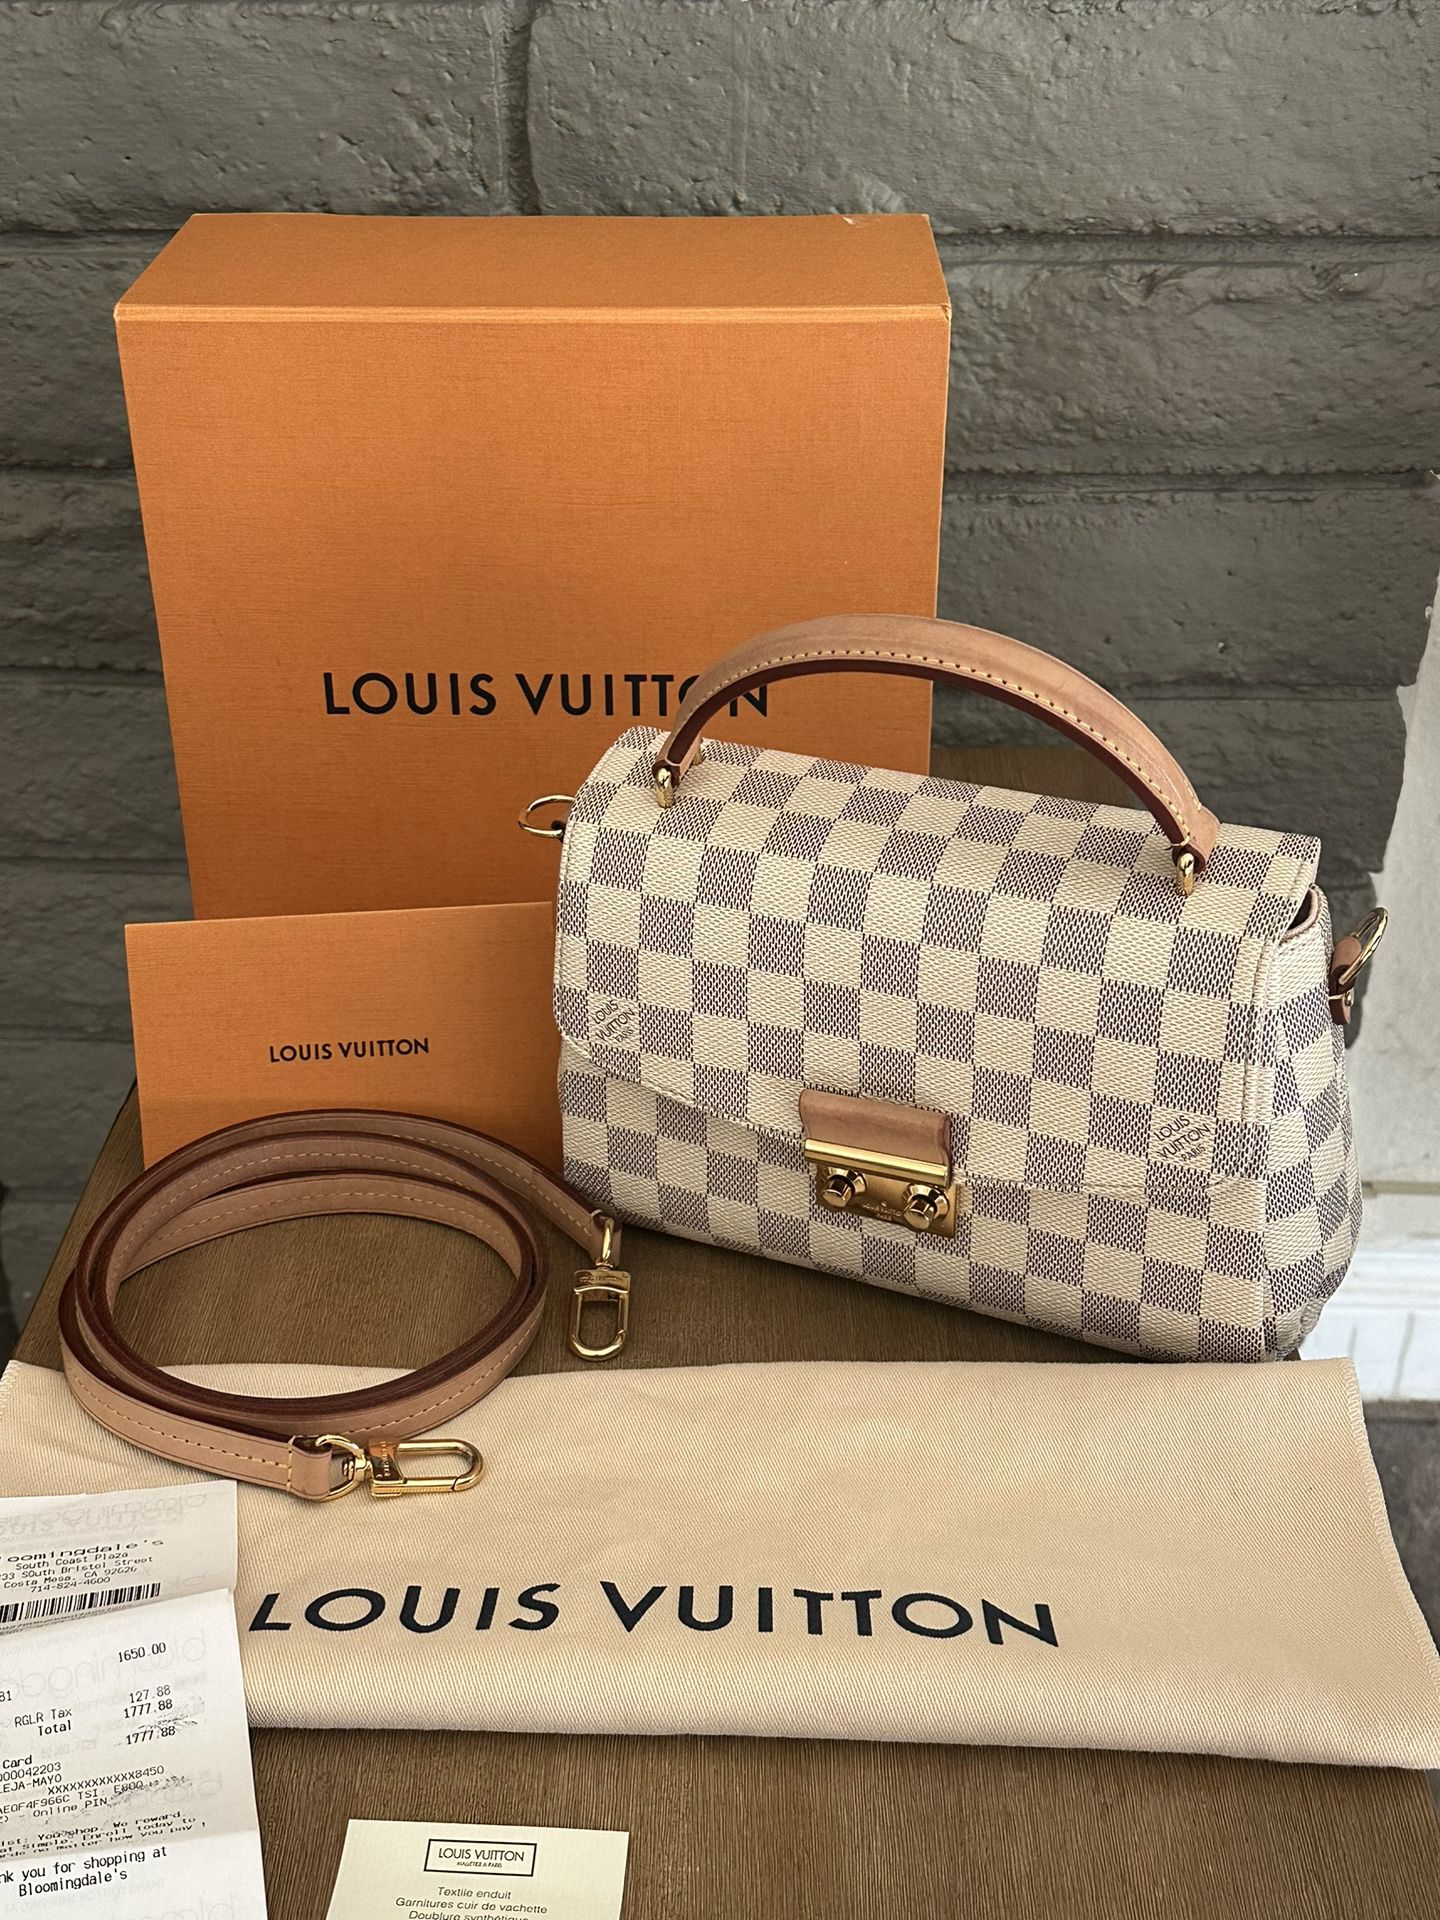 Authentic Louis Vuitton Croisette Damier Azur Bag 